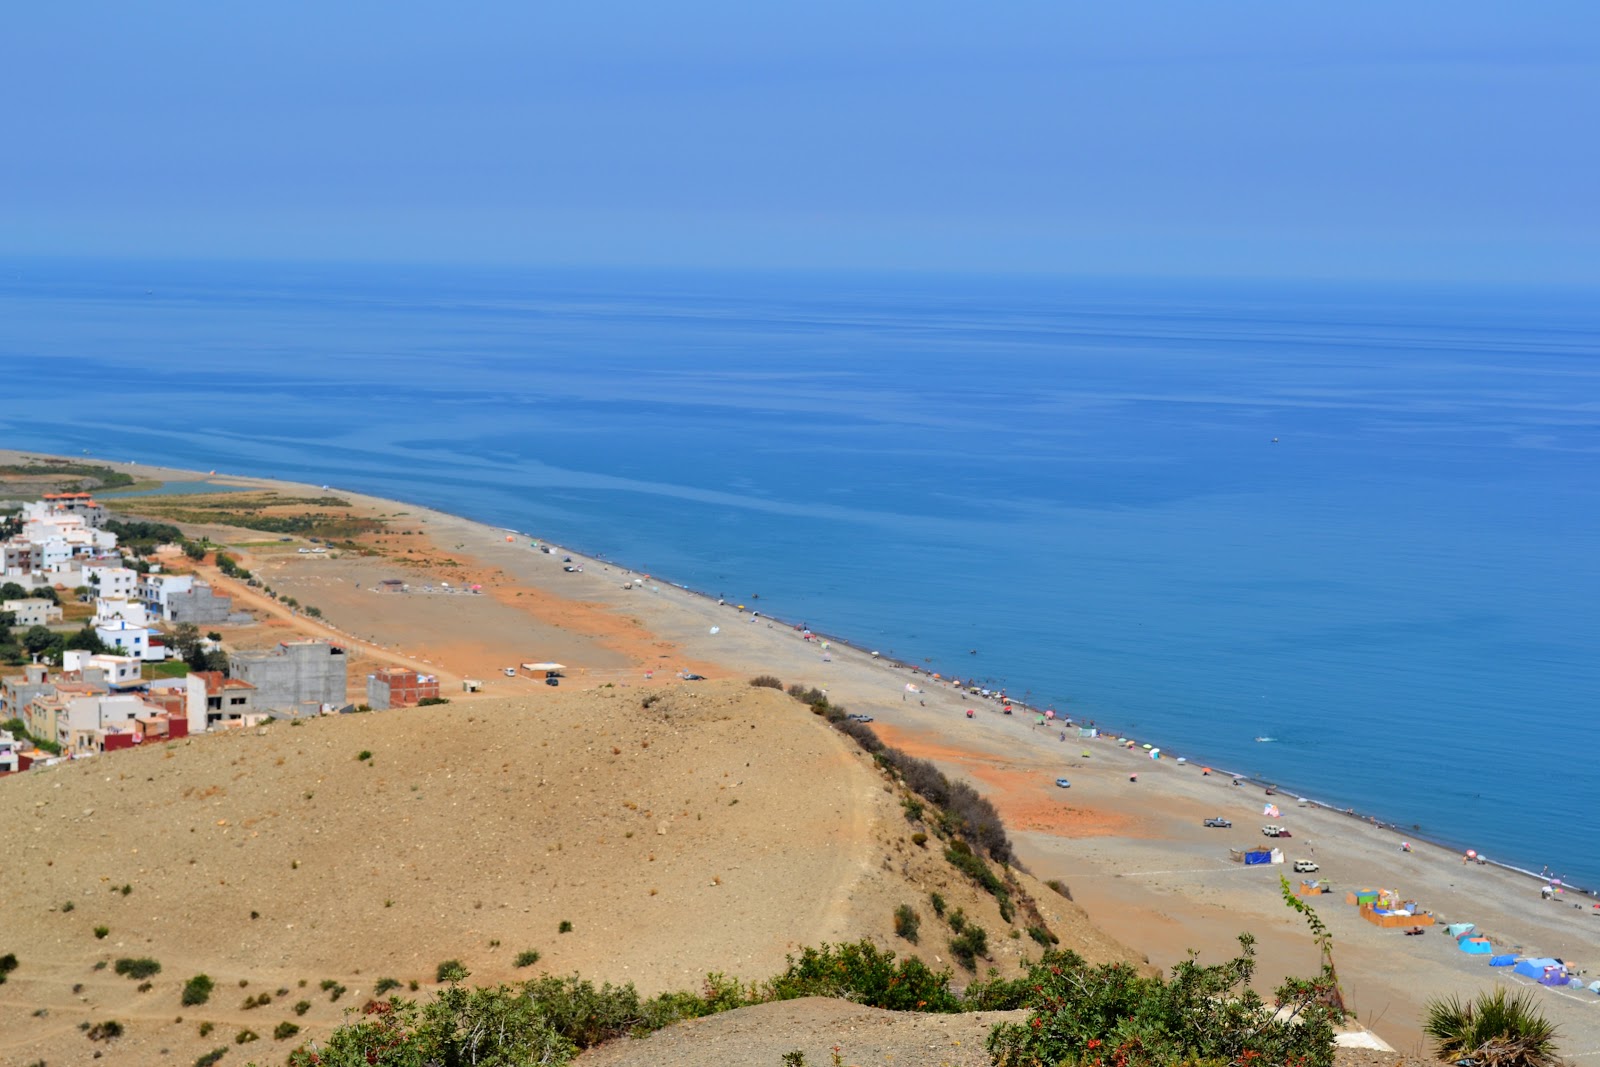 Foto von Plage Sidi Yahya Aarab mit langer gerader strand